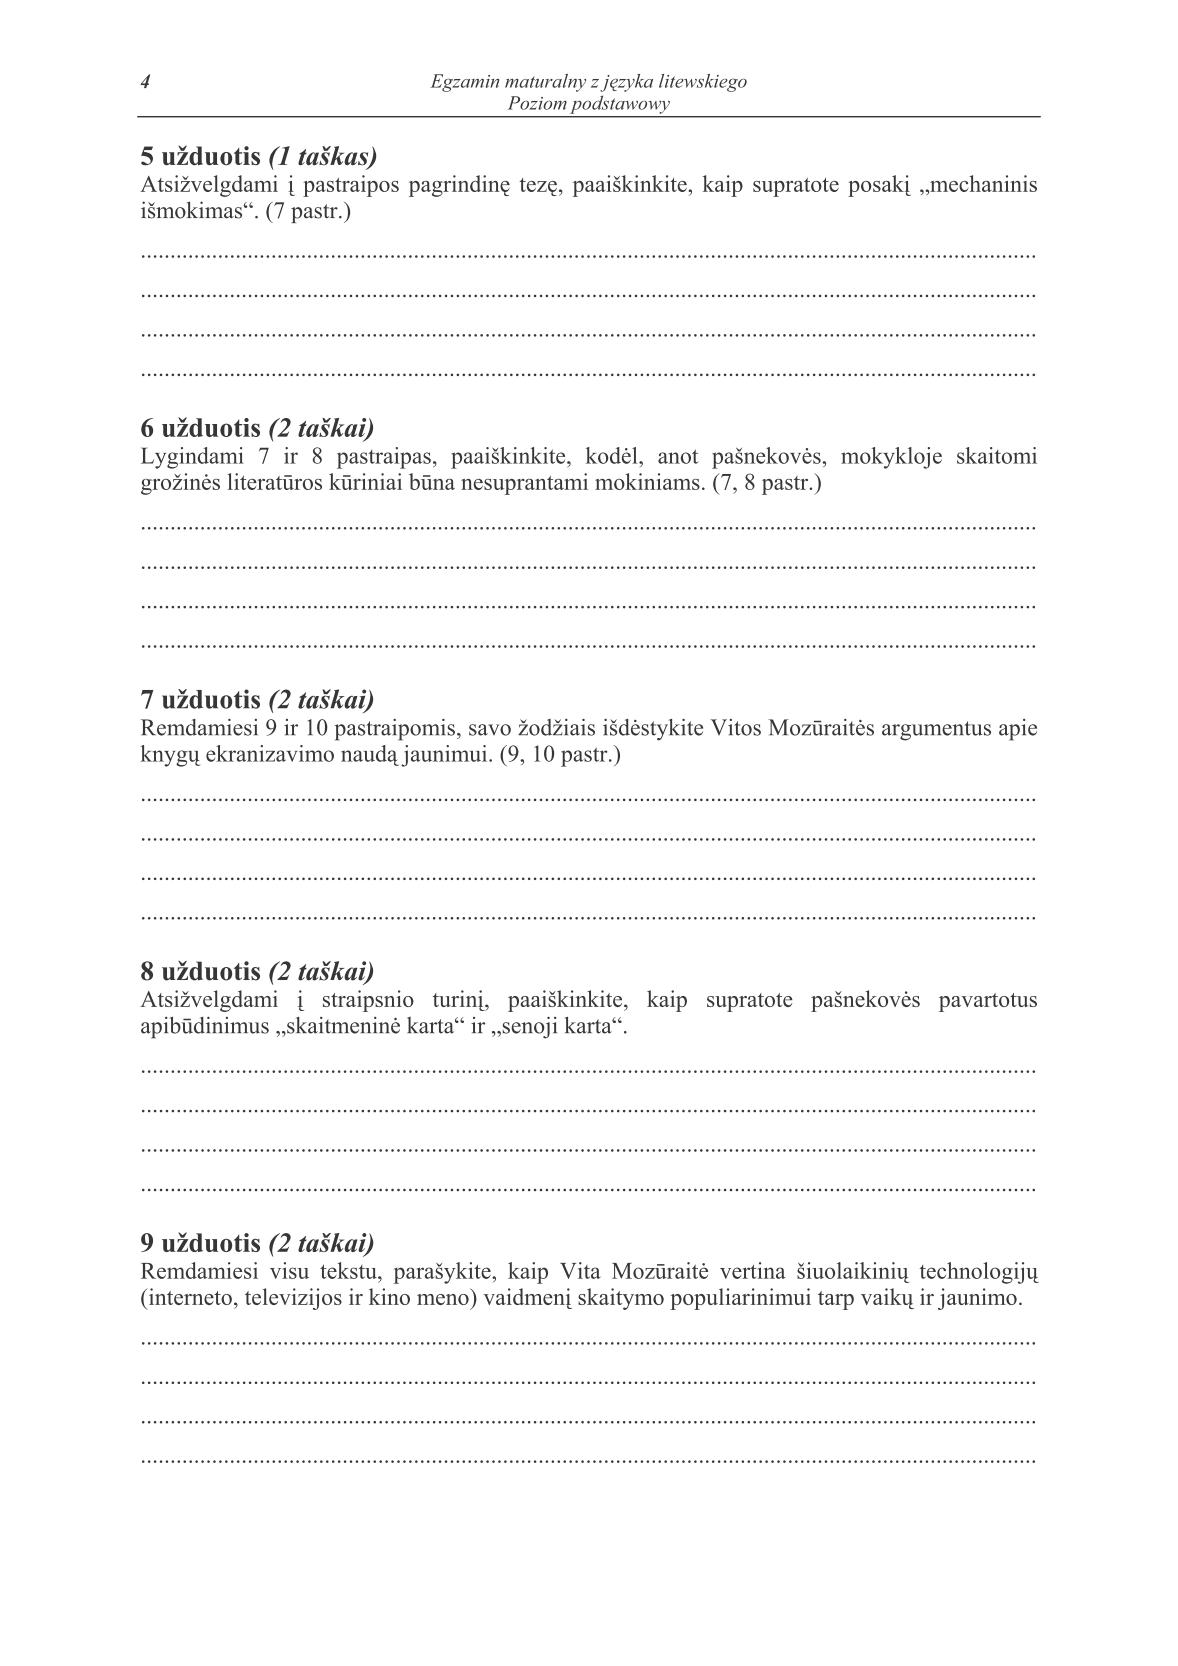 pytania-jezyk-litewski-poziom-podstawowy-matura-2014-str.4